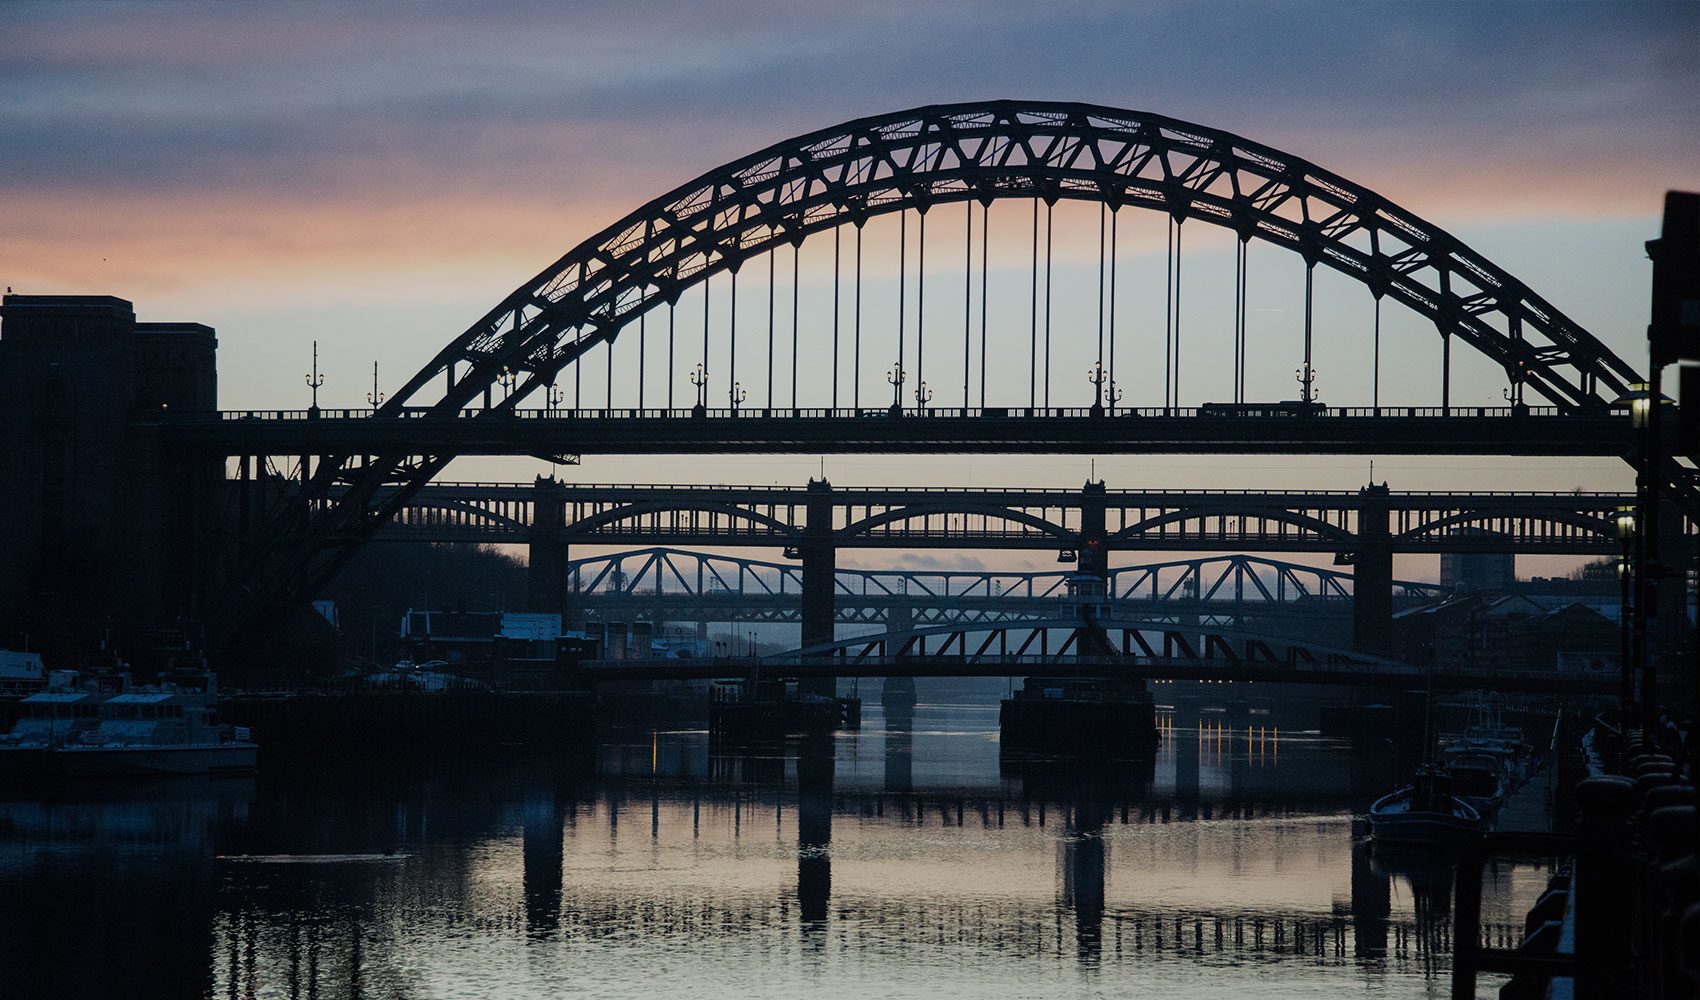 River and bridge in Newcastle